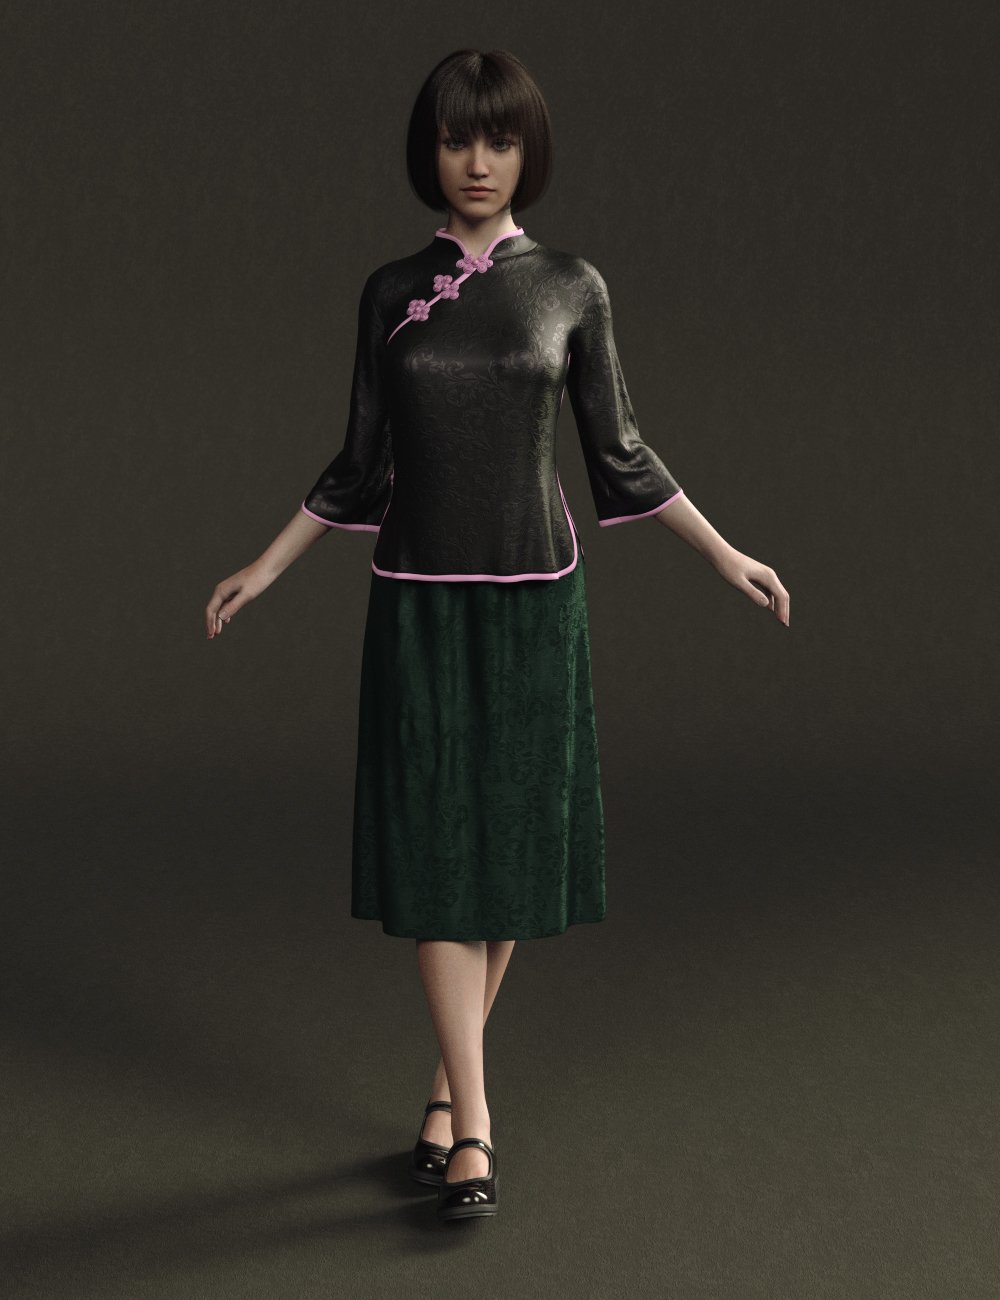 Hann Mei Outfits for Genesis 8 Female(s) by: Sprite, 3D Models by Daz 3D